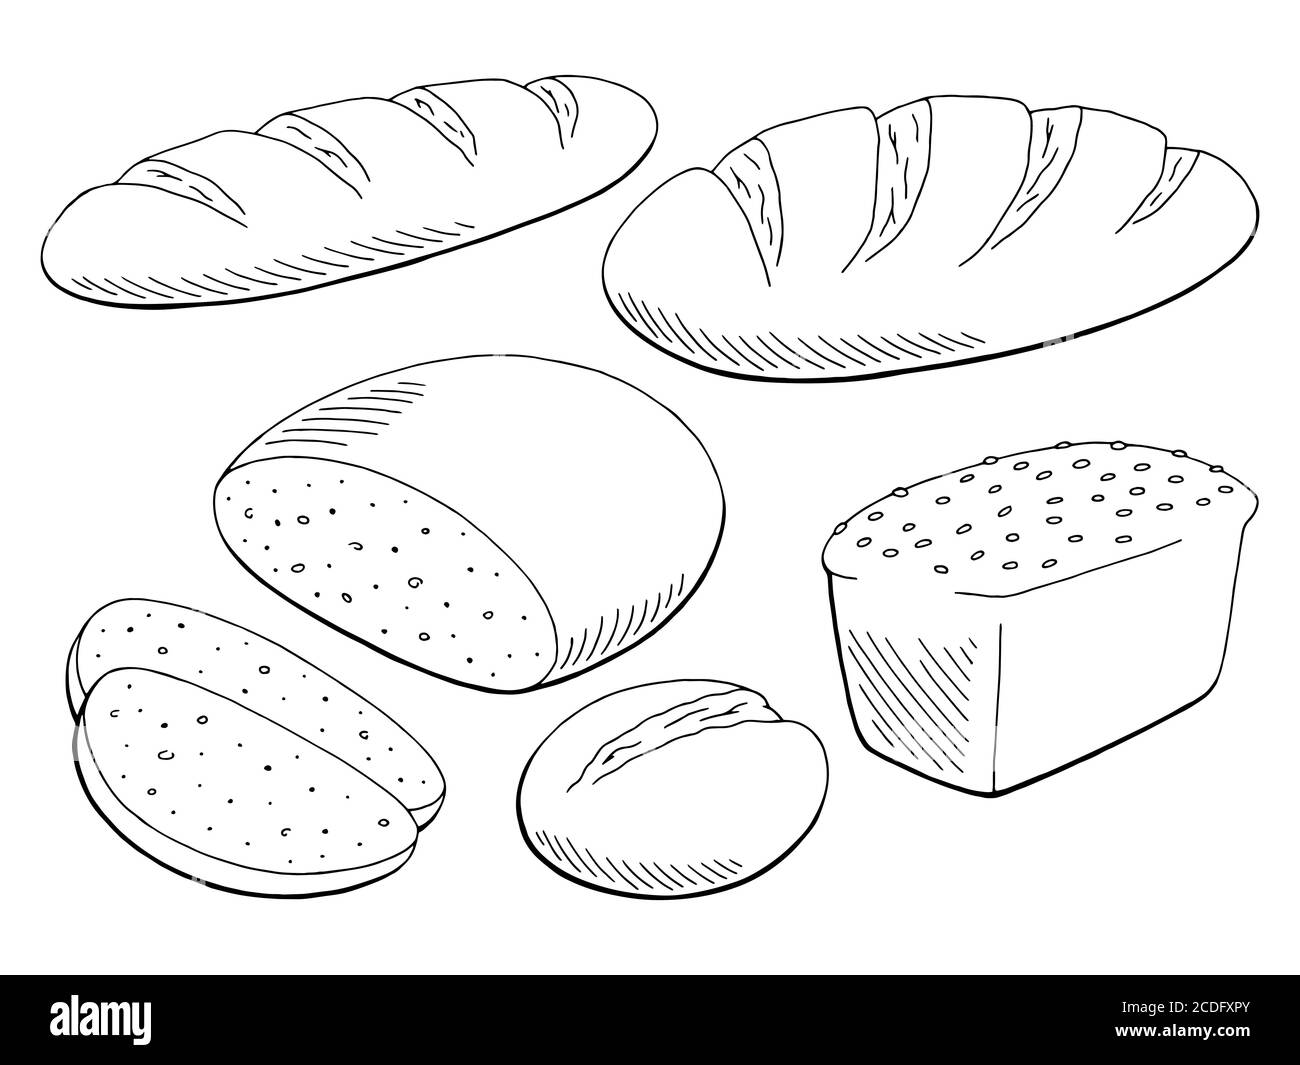 Brot Set Grafik schwarz weiß isoliert Lebensmittel Skizze Illustration Vektor Stock Vektor